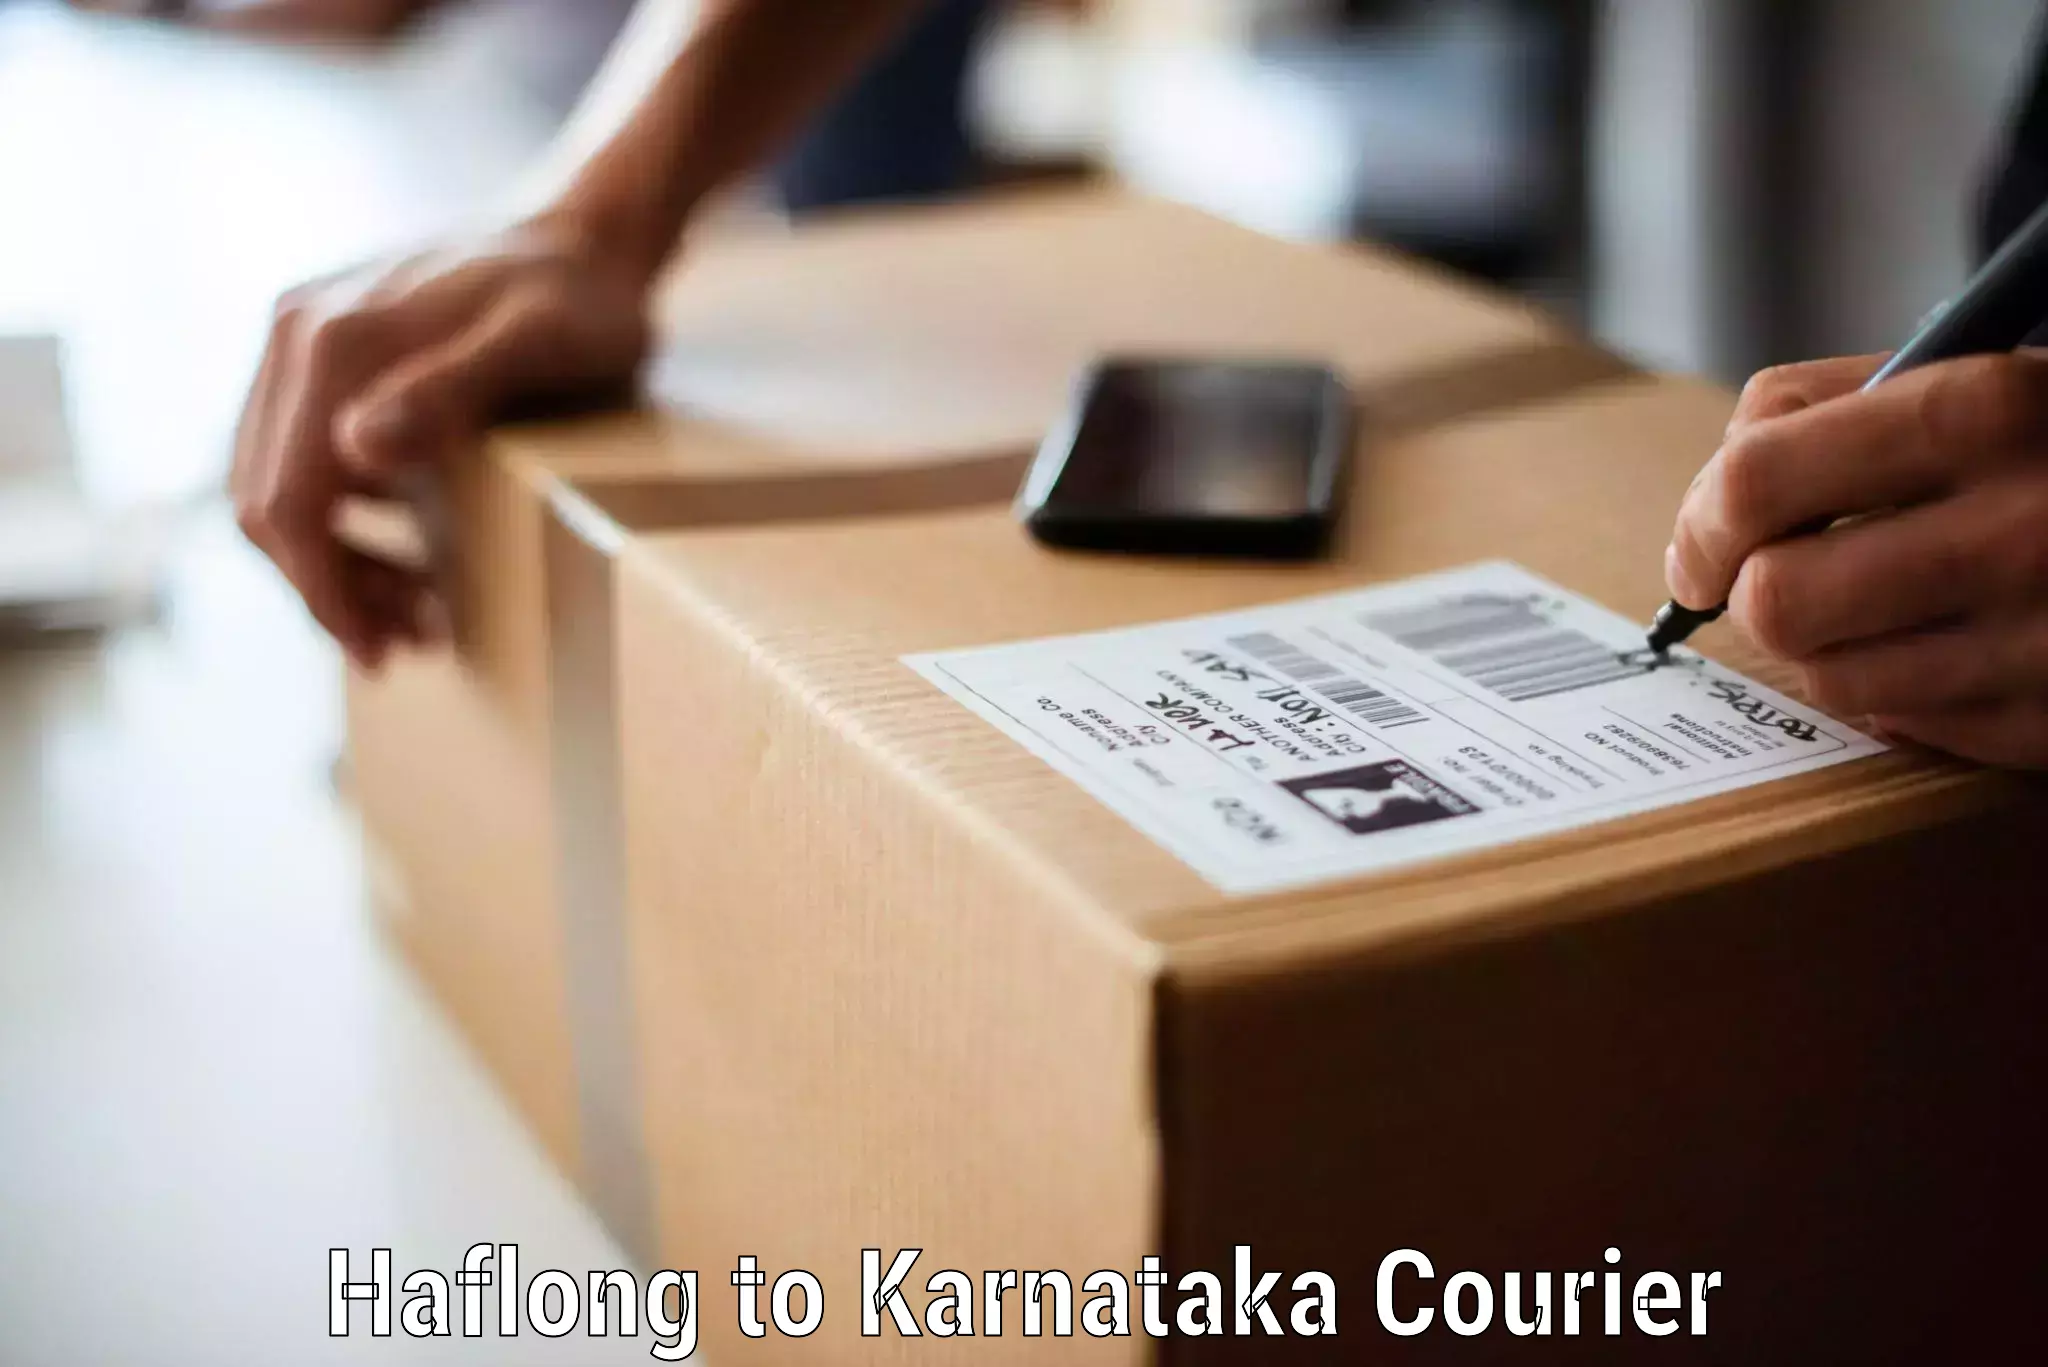 Furniture transport services Haflong to Karnataka